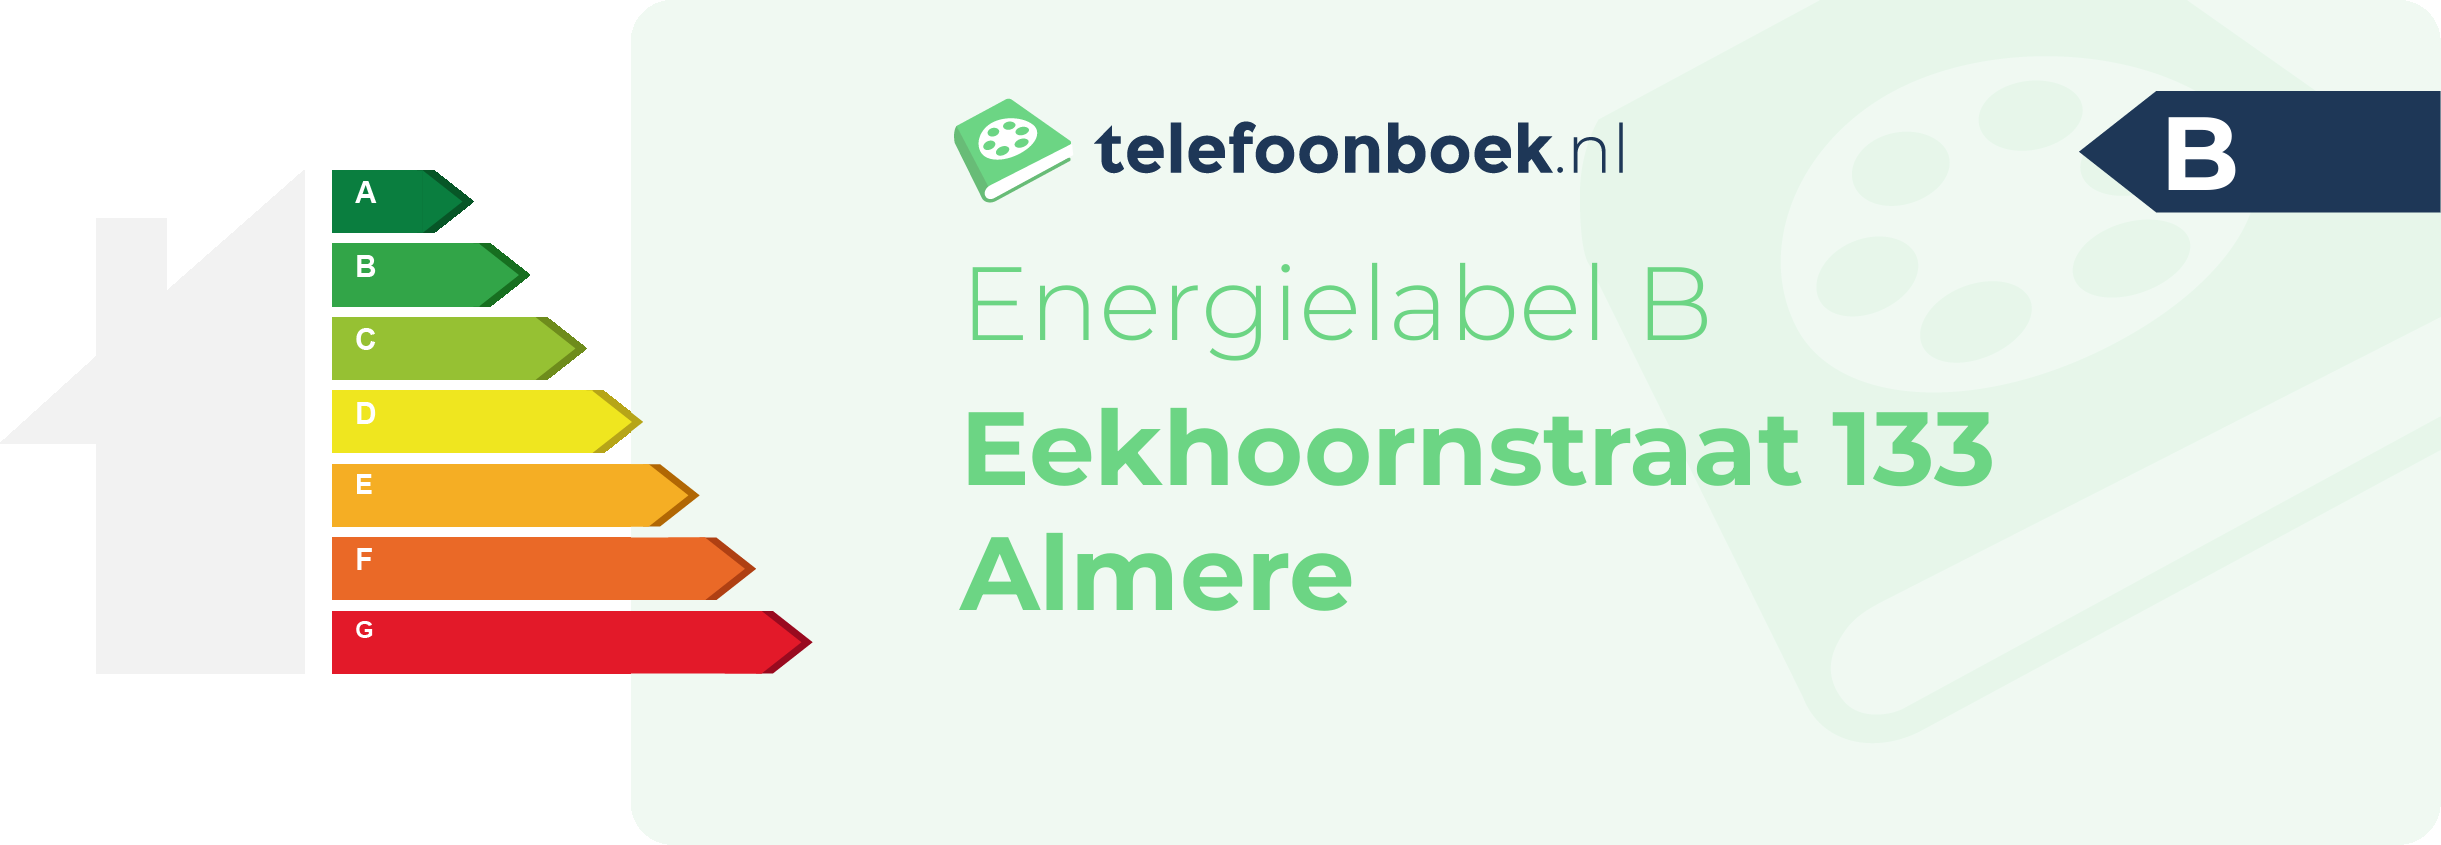 Energielabel Eekhoornstraat 133 Almere